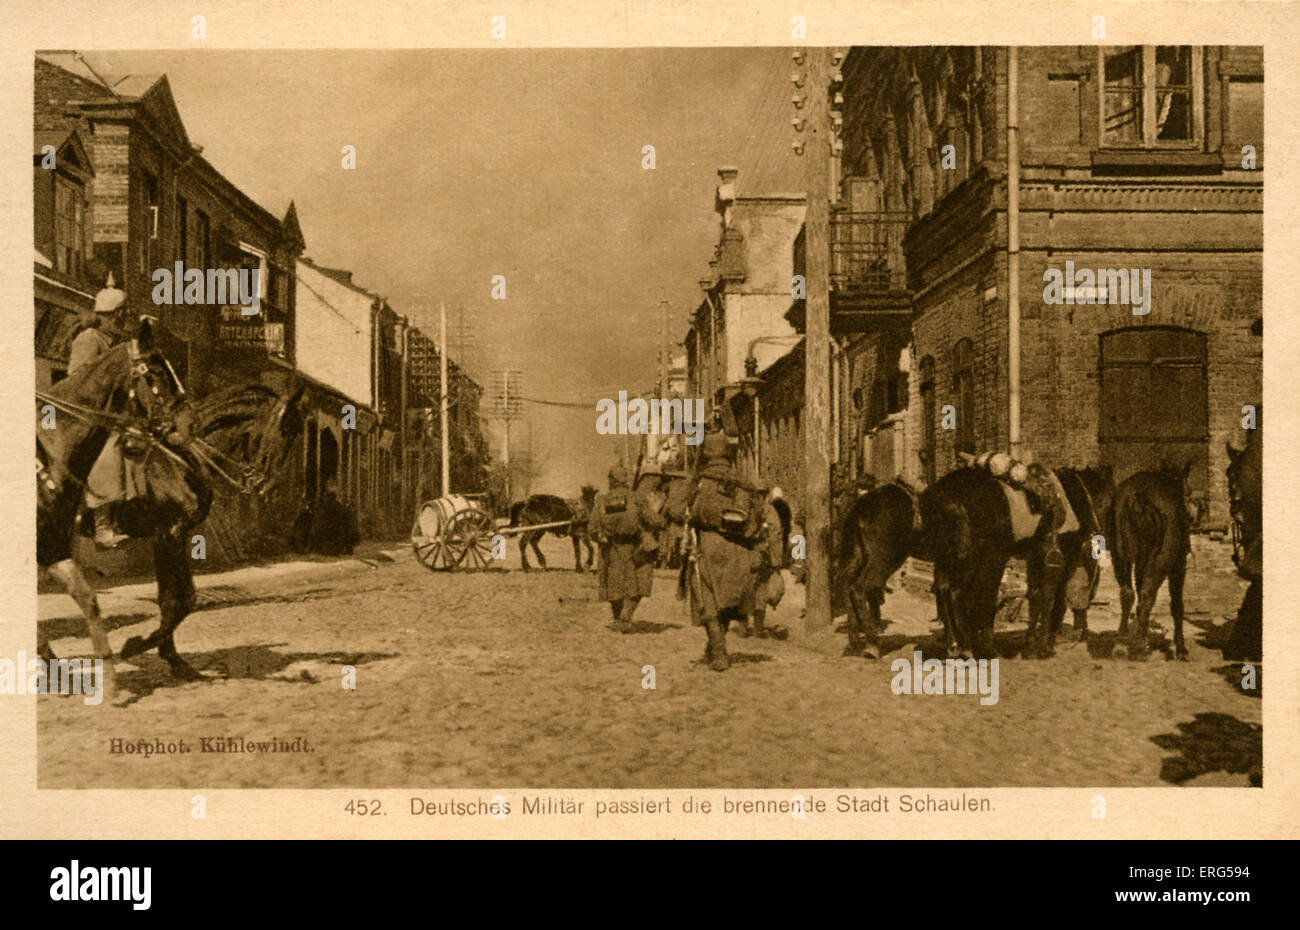 Am östlichen Front Städte unter deutscher Besatzung Weltkrieg. Entnommen aus Foto, zeigt deutsche Truppen durch die Stadt Stockfoto